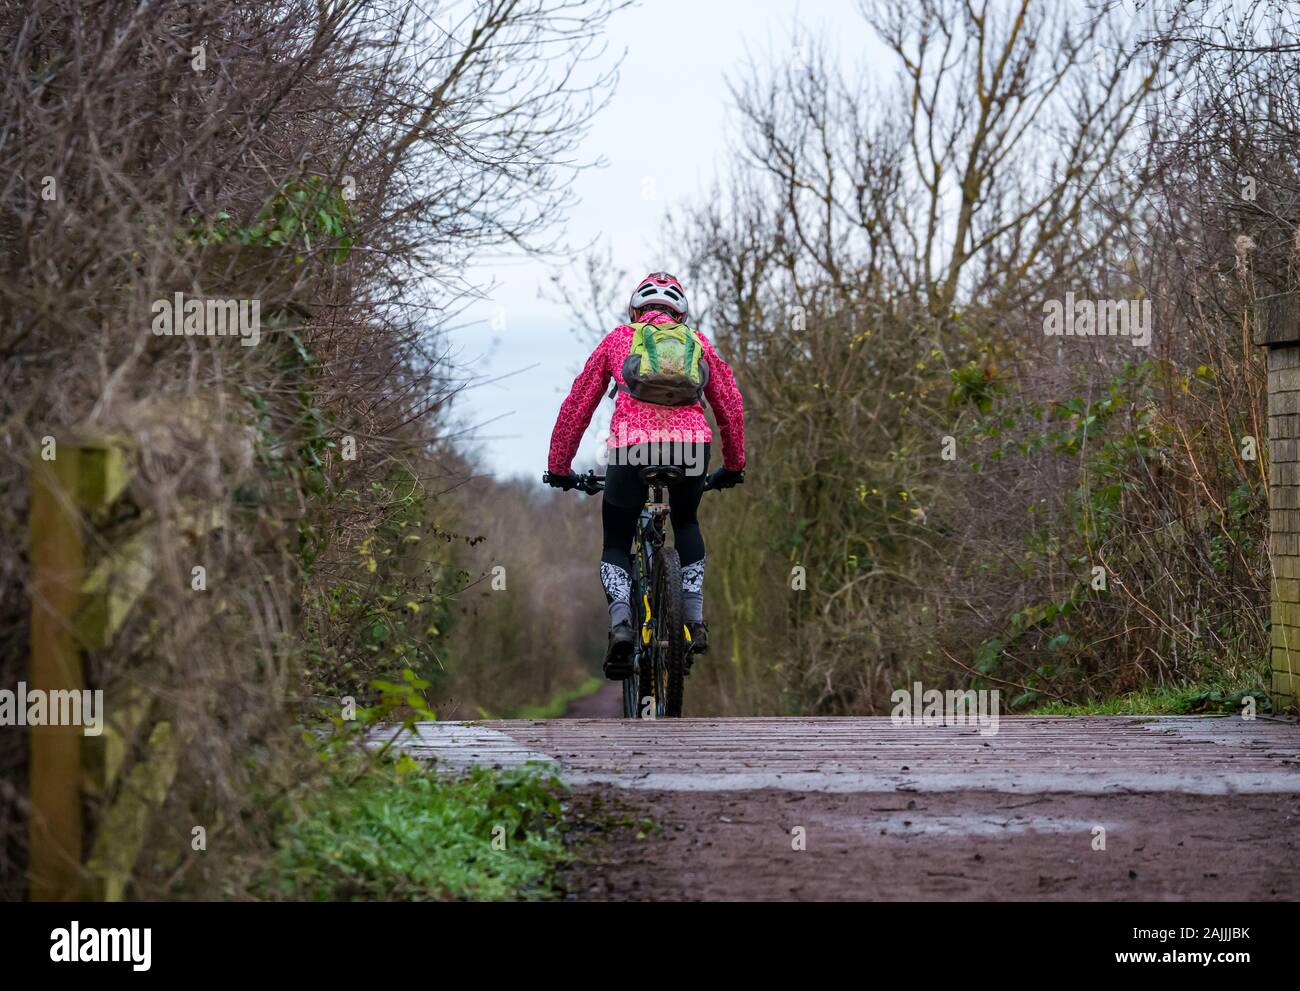 Femme vtt sur chemins boueux cycliste vélo route chemin de fer pont de chemin, East Lothian, Scotland, UK Banque D'Images